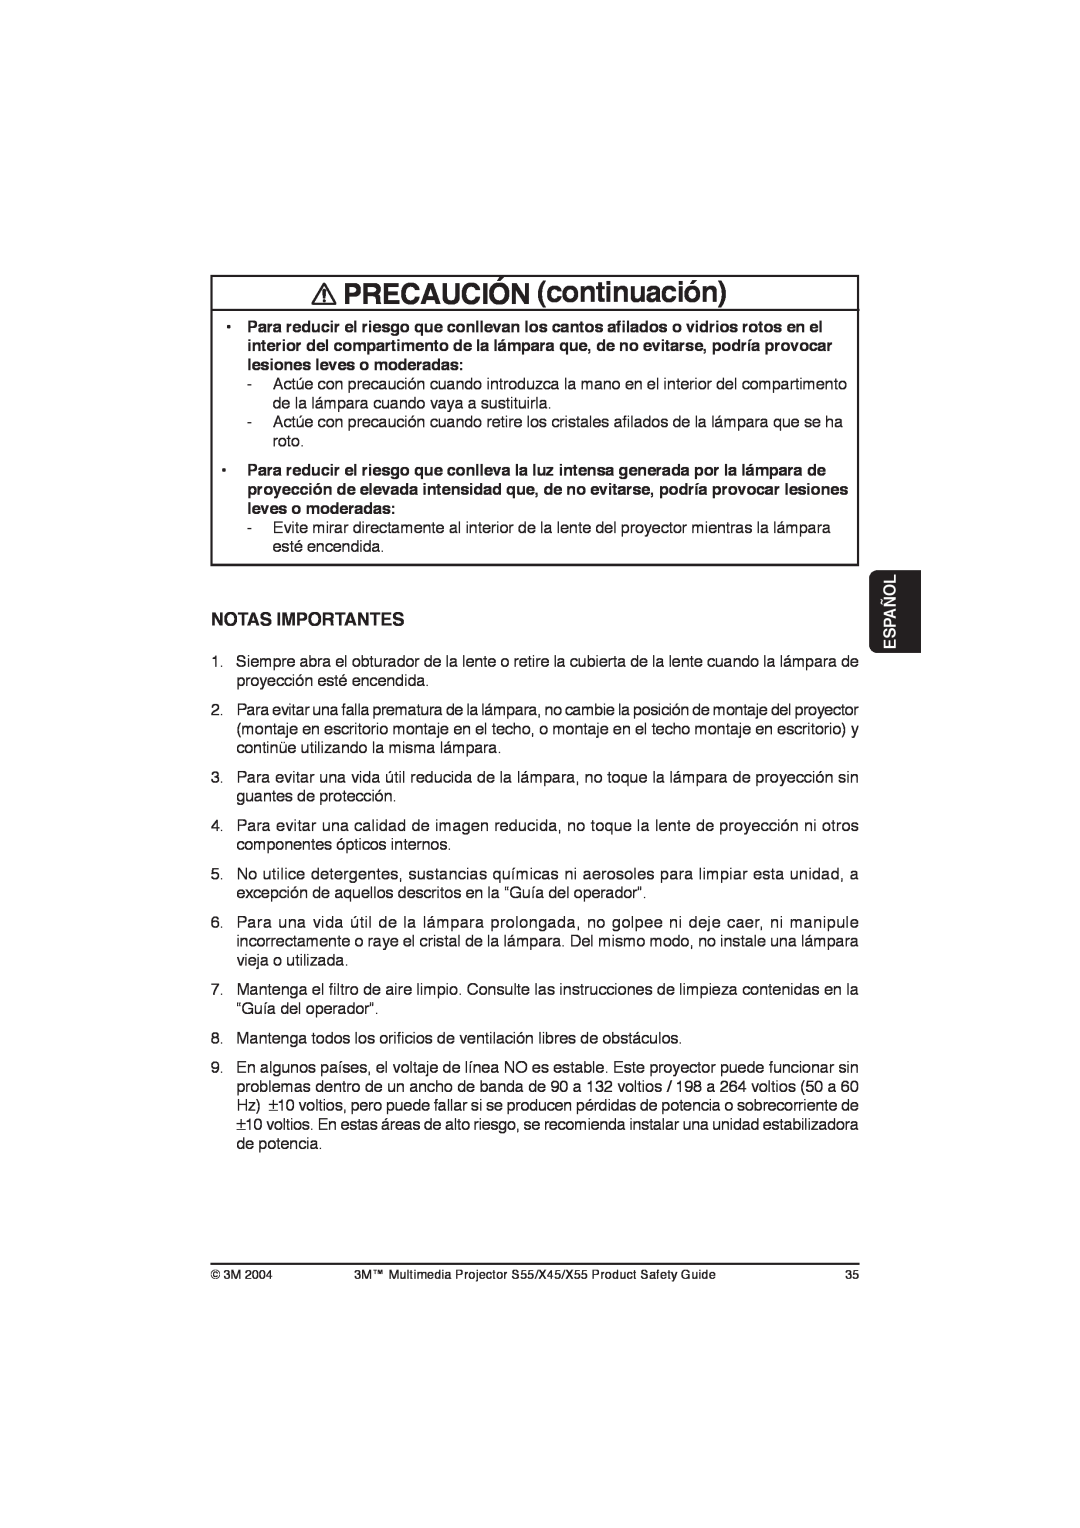 3M X55, X45, S55 manual PRECAUCIÓN continuación, Notas Importantes, Español 